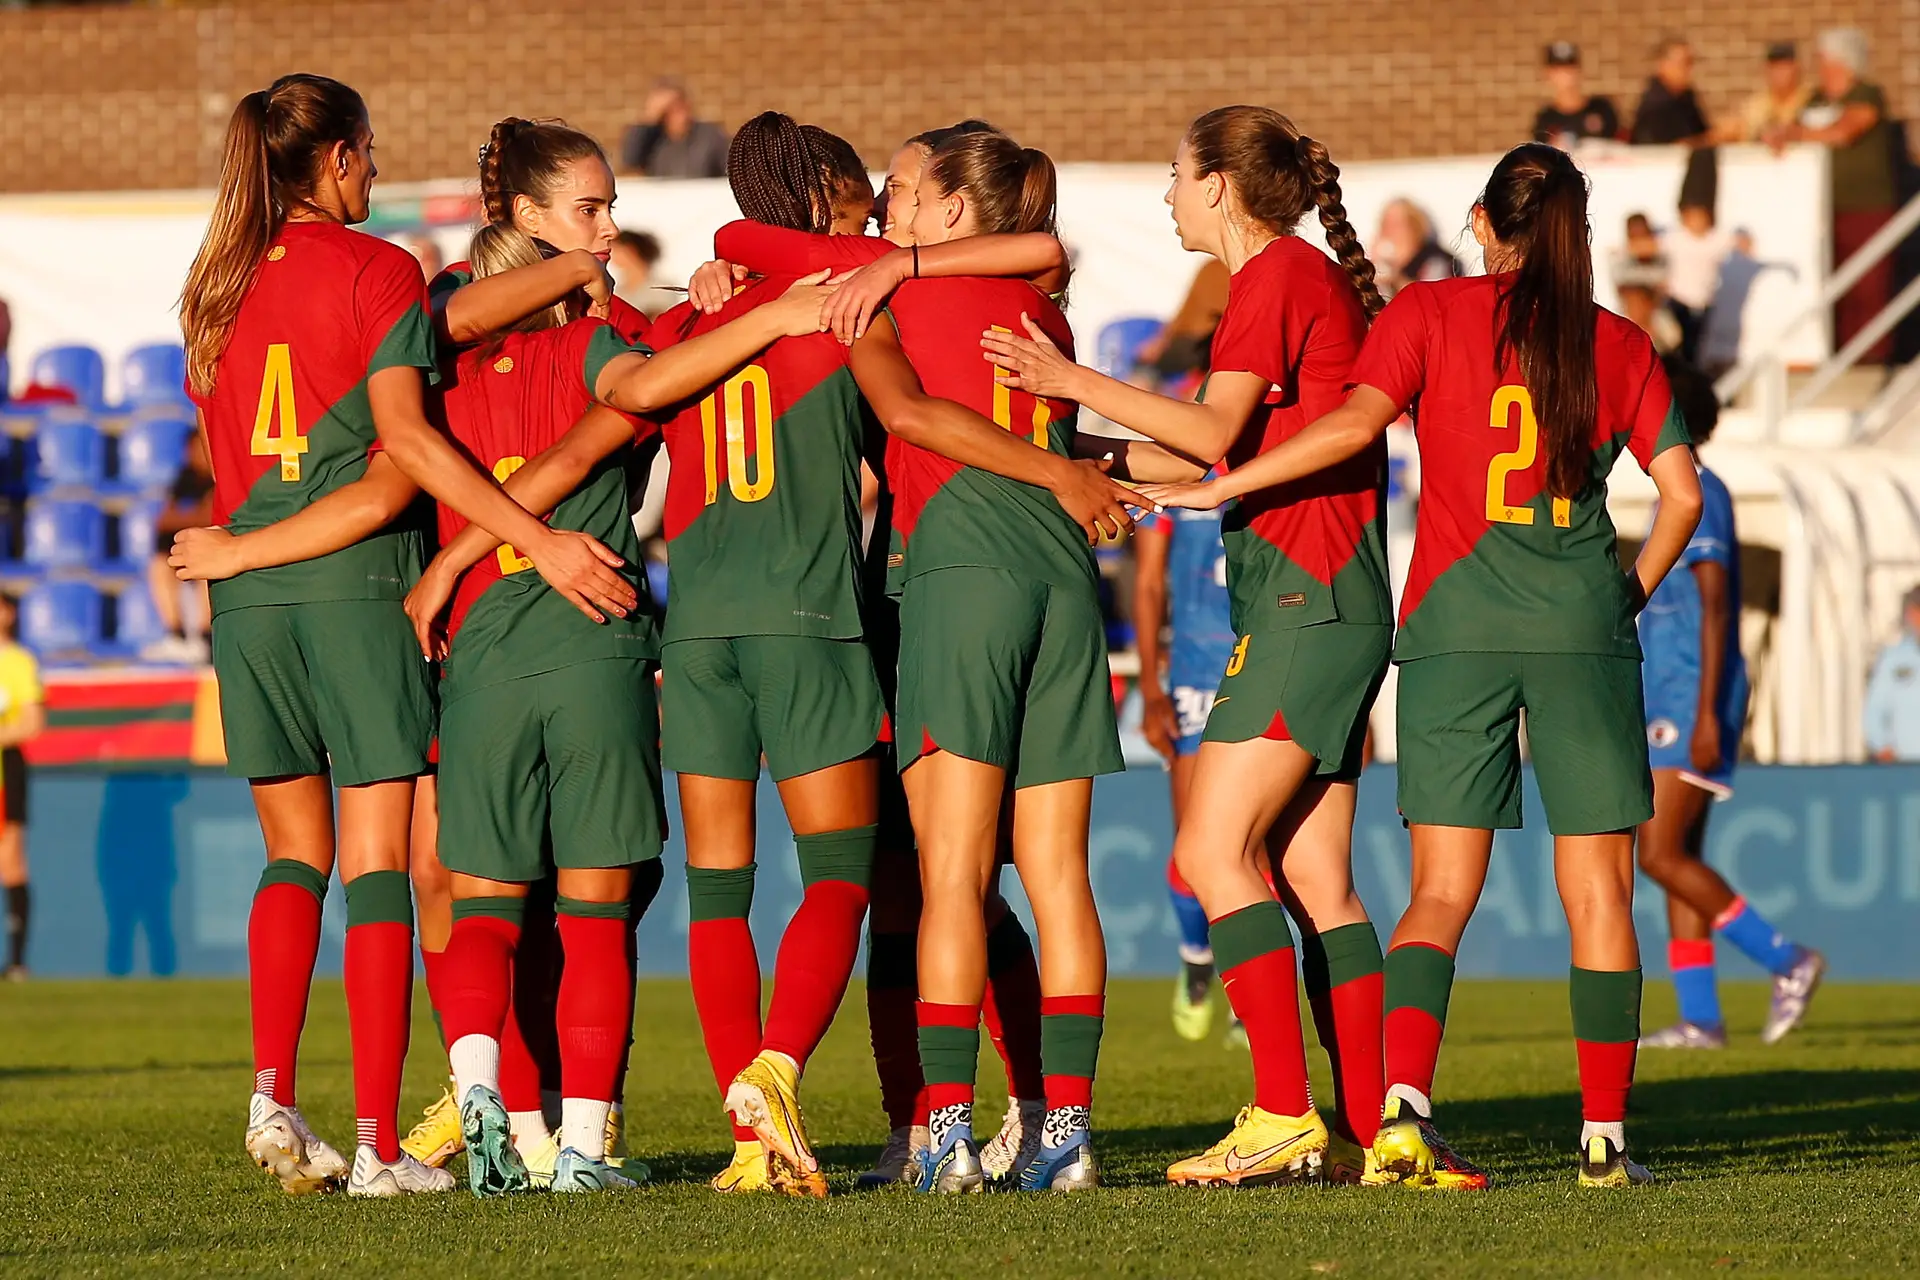 É oficial: RTP vai transmitir os jogos de Portugal no Mundial de futebol  feminino